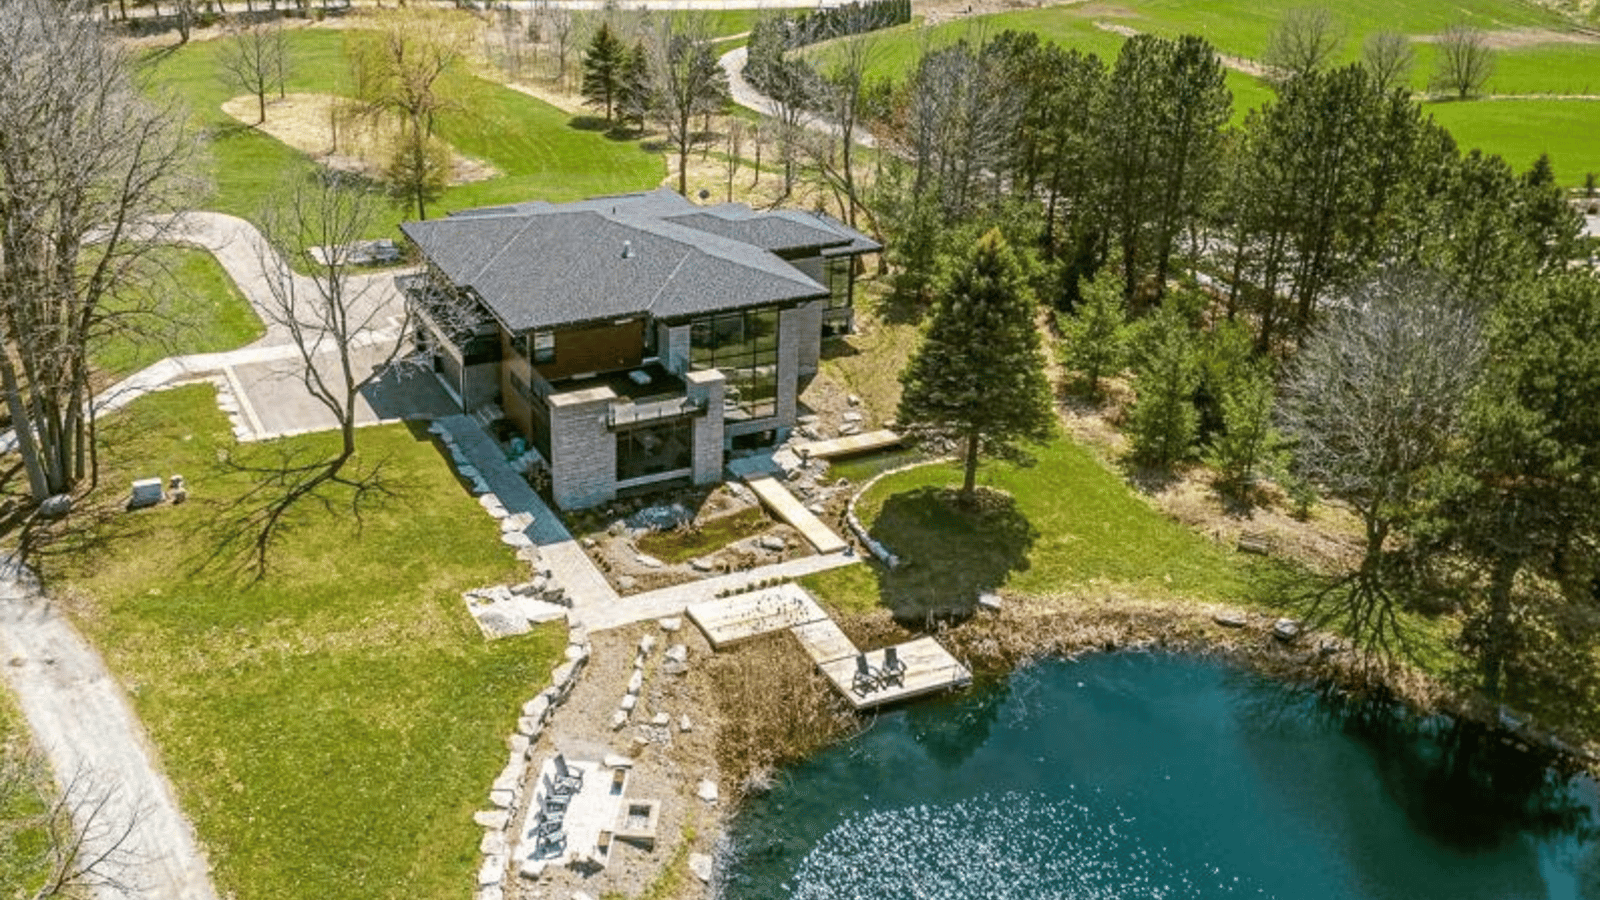 Cette magnifique maison à vendre possède son propre étang où se baigner